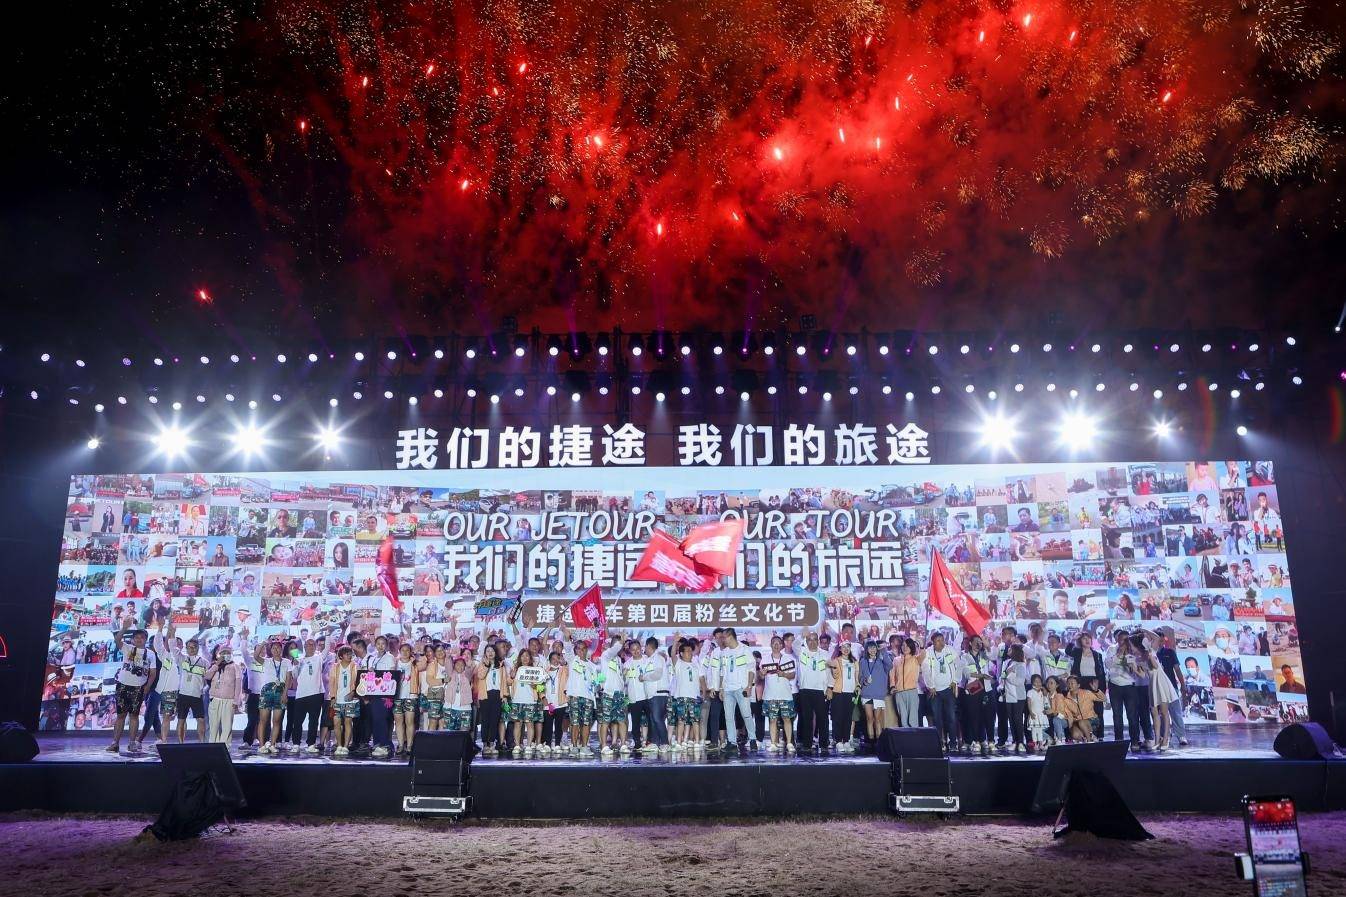 捷途汽车第五届粉丝文化节暨大圣预定开启，8月18日盛大启幕